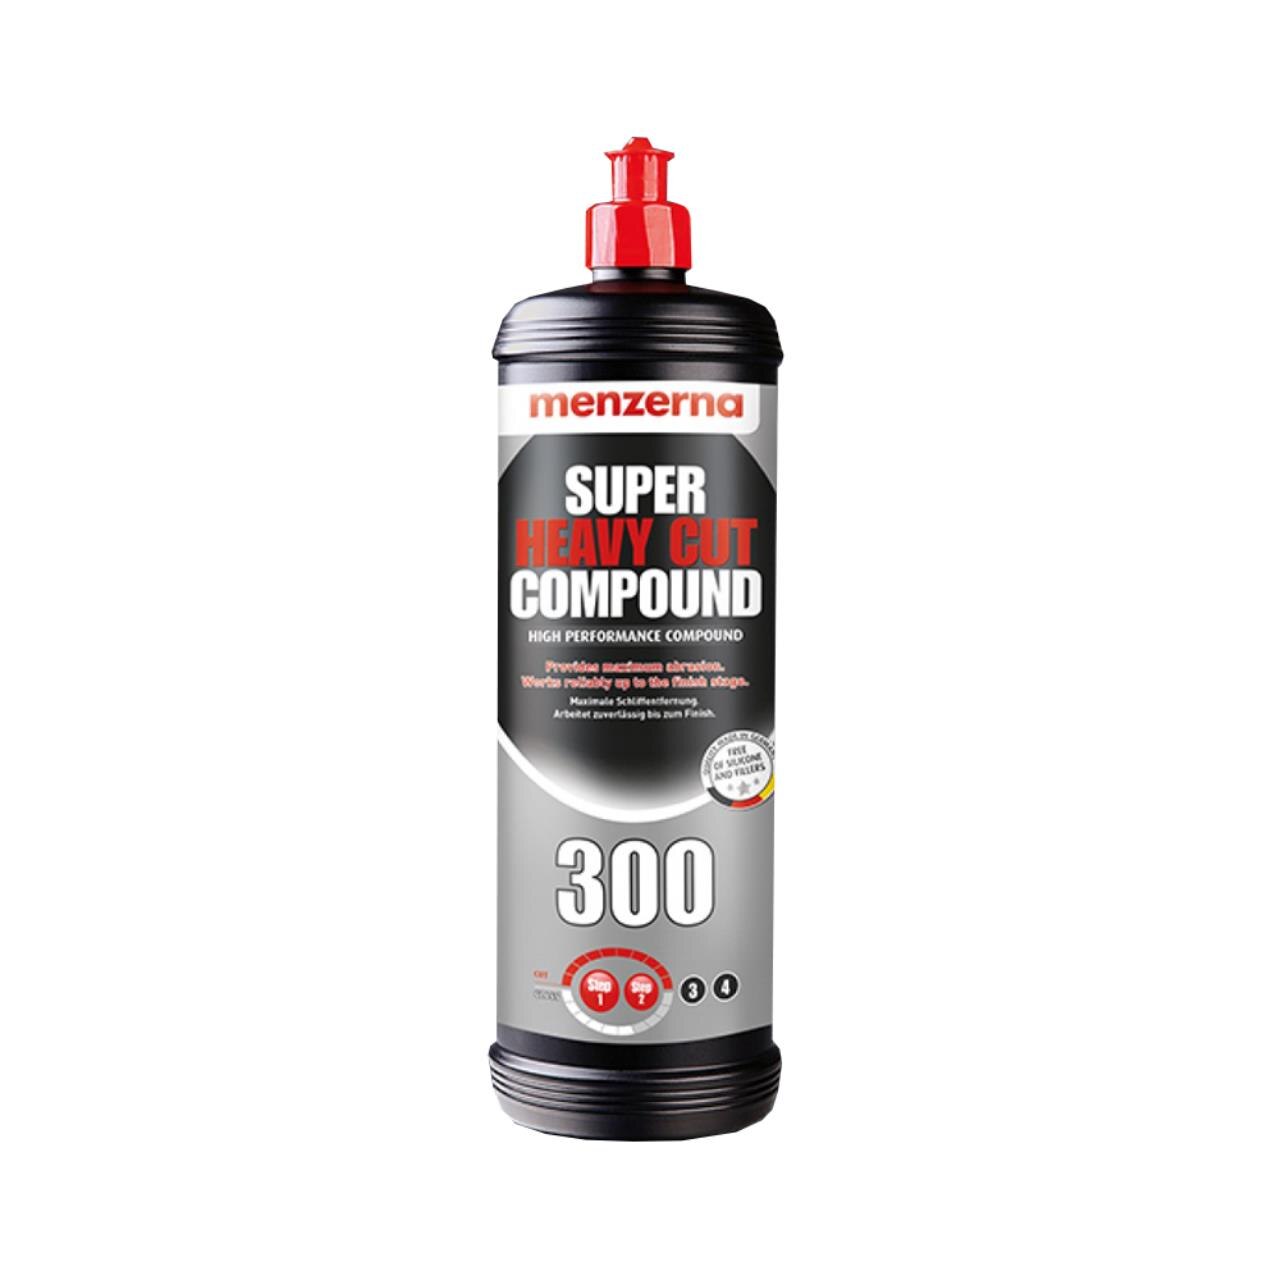 Super Heavy Cut Compound 300 - Универсальная высокоабразивная полировальная